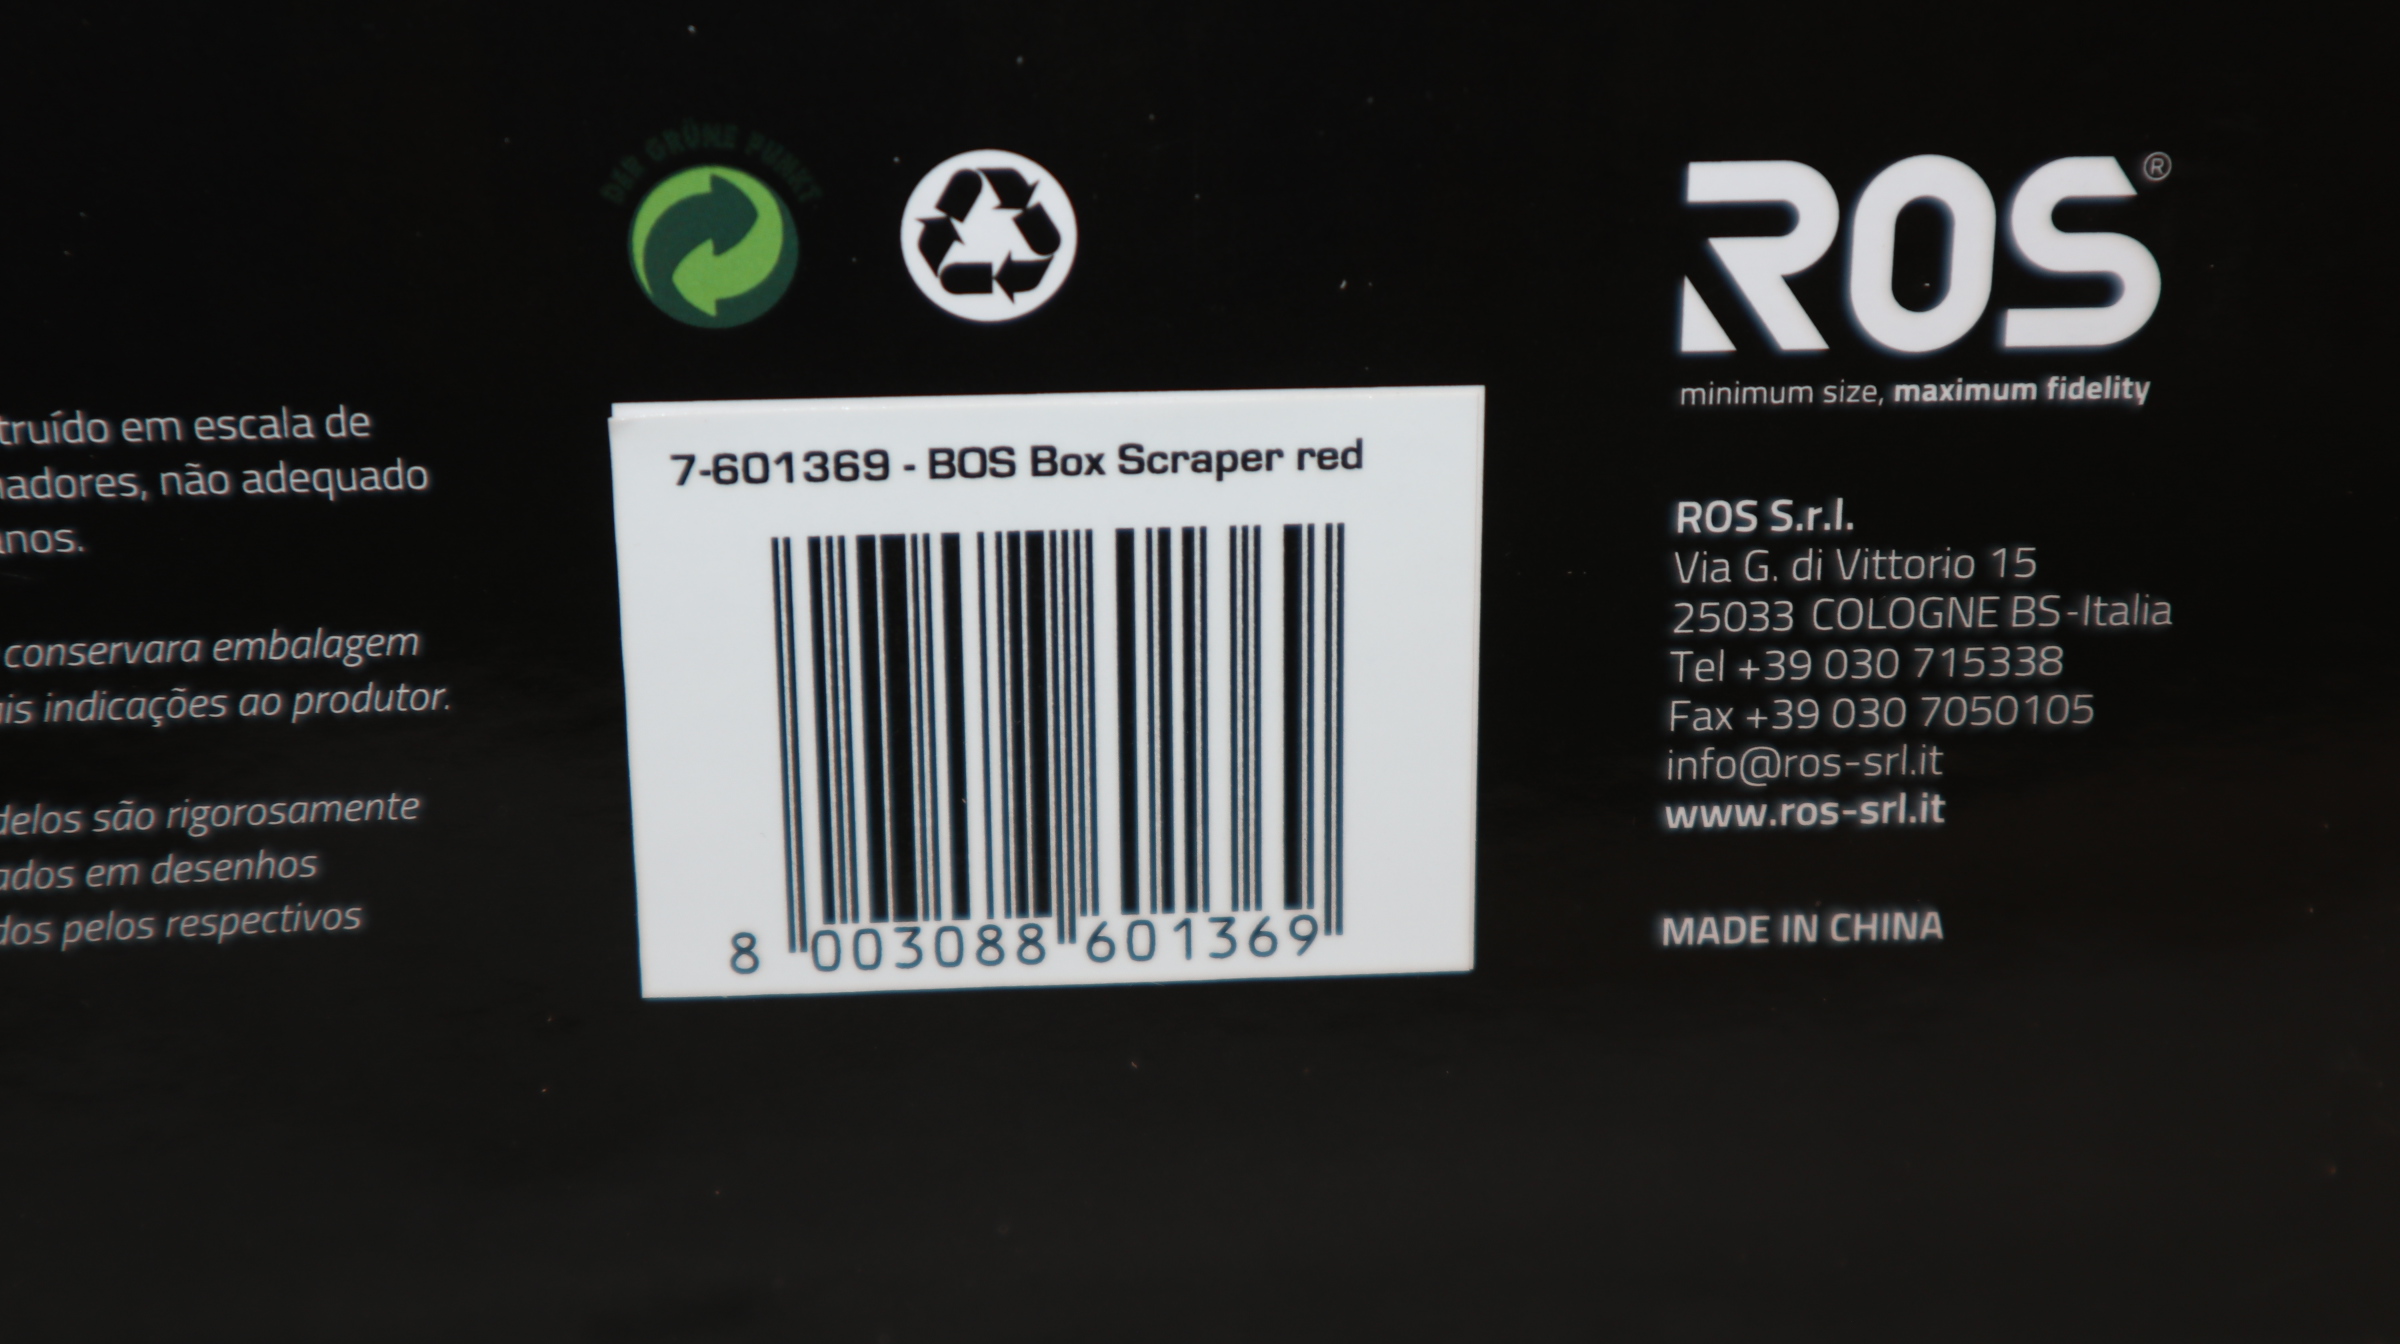 ROS 601369 in 1:32, BOS Box Scraper ROT, NEU in OVP